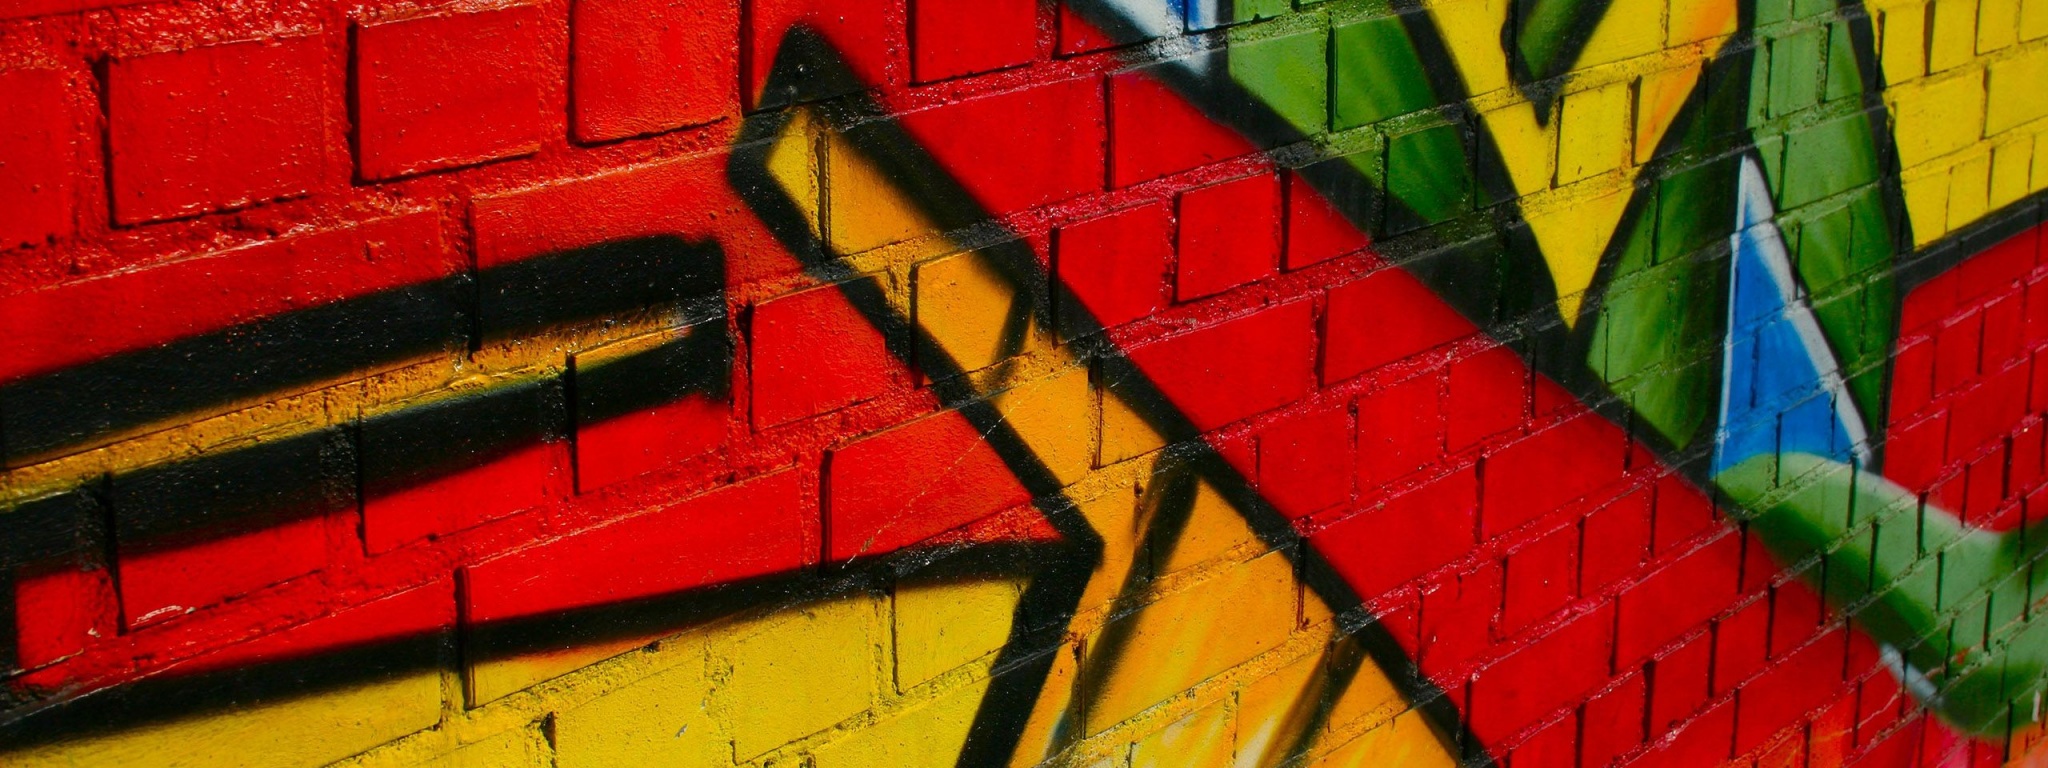 Graffiti Wall Figure